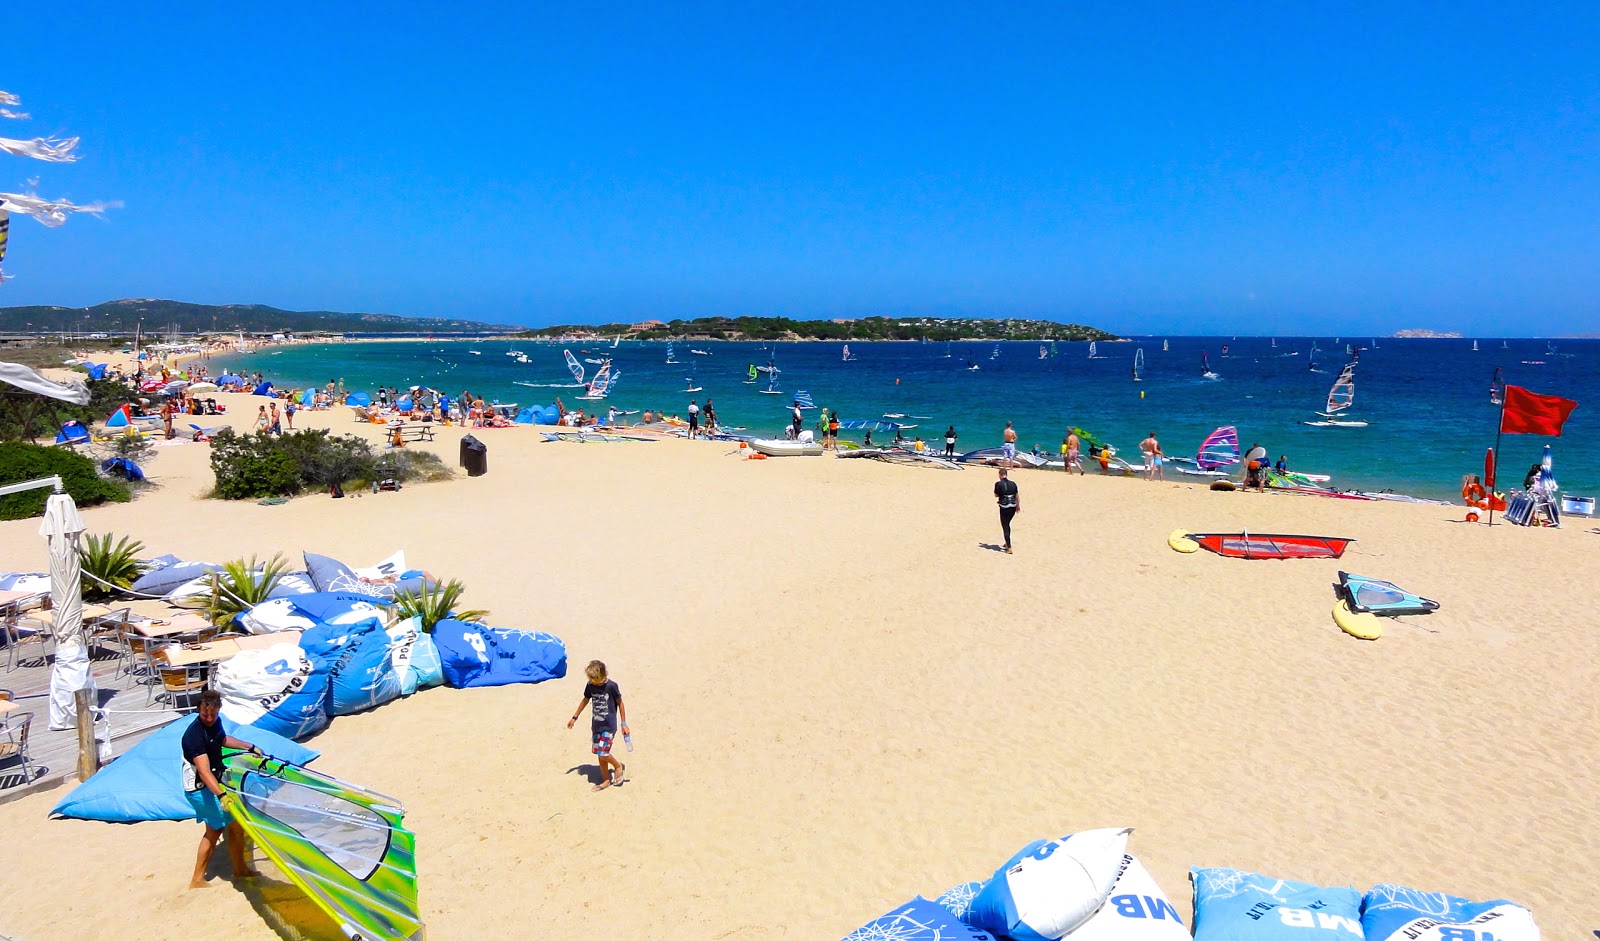 Photo of Spiaggia di Porto Pollo with brown sand surface